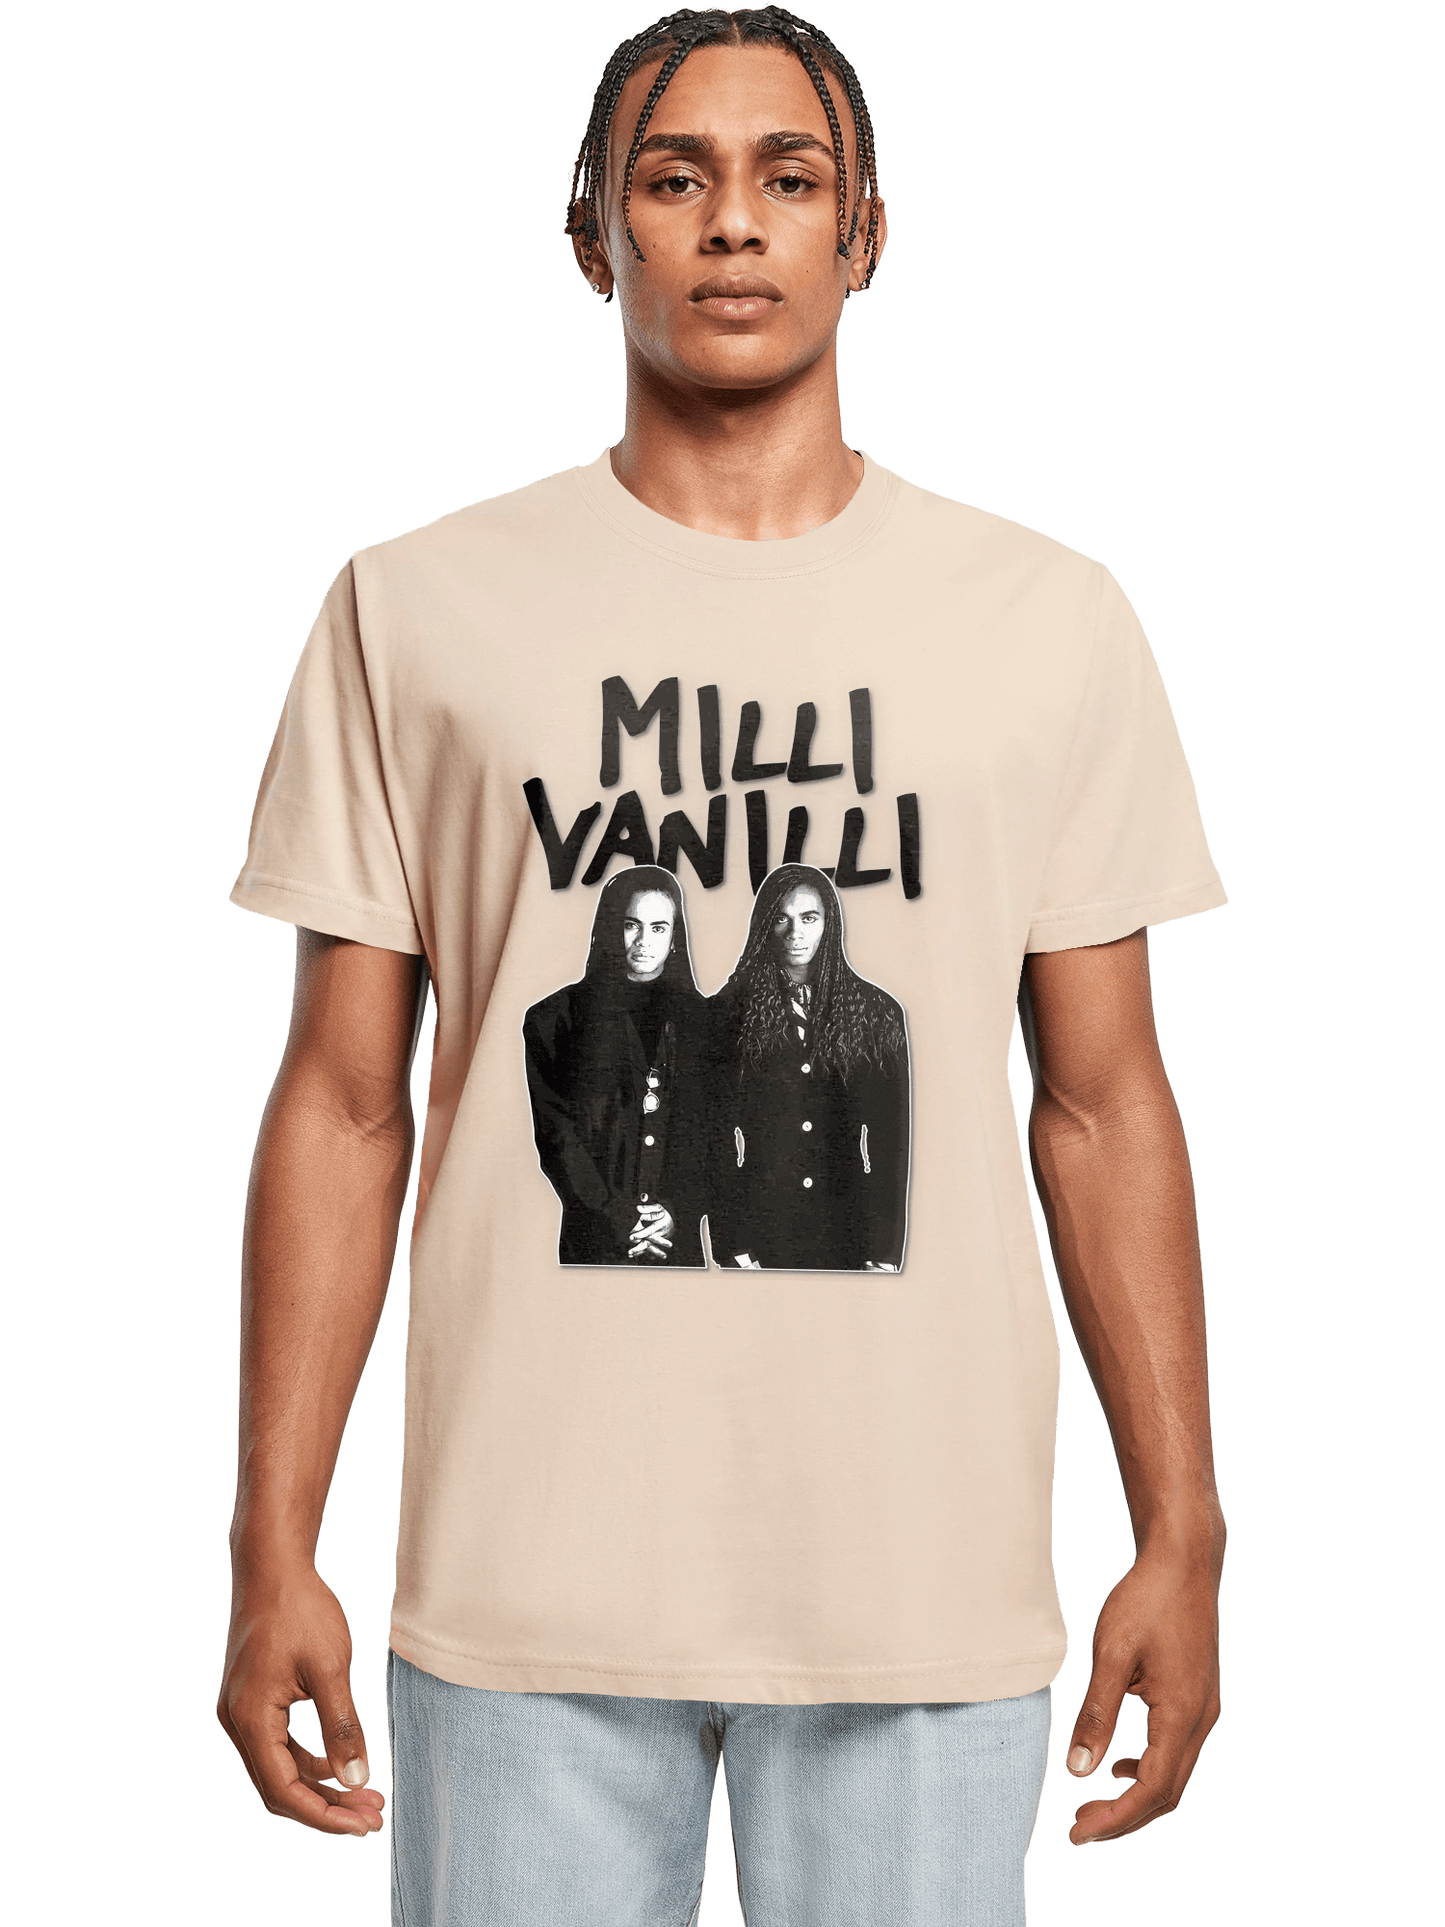 2000s Style Milli Vanilli T-Shirt